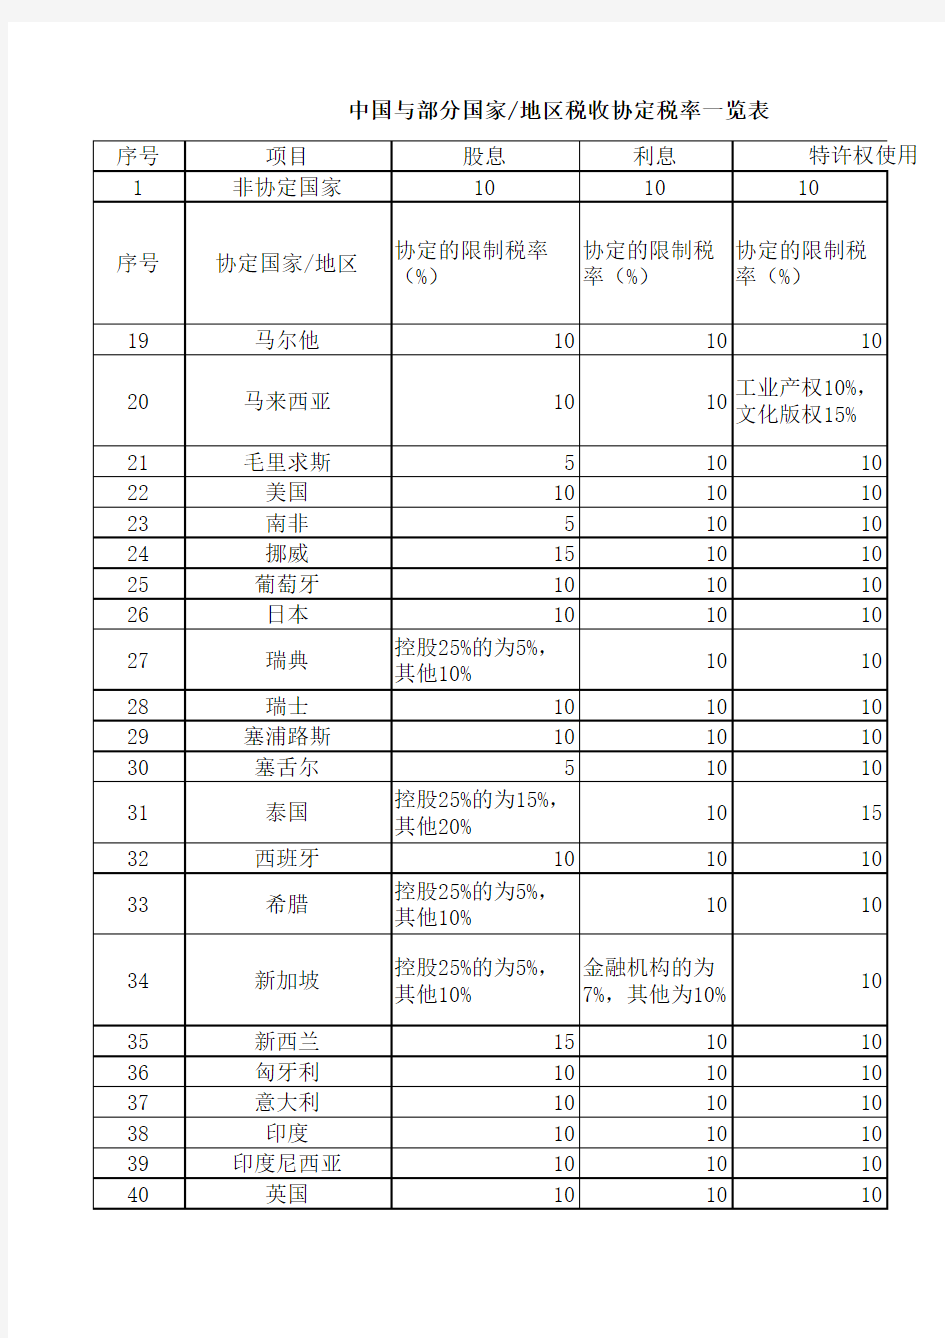 中国与部分国家地区税收协定税率一览表